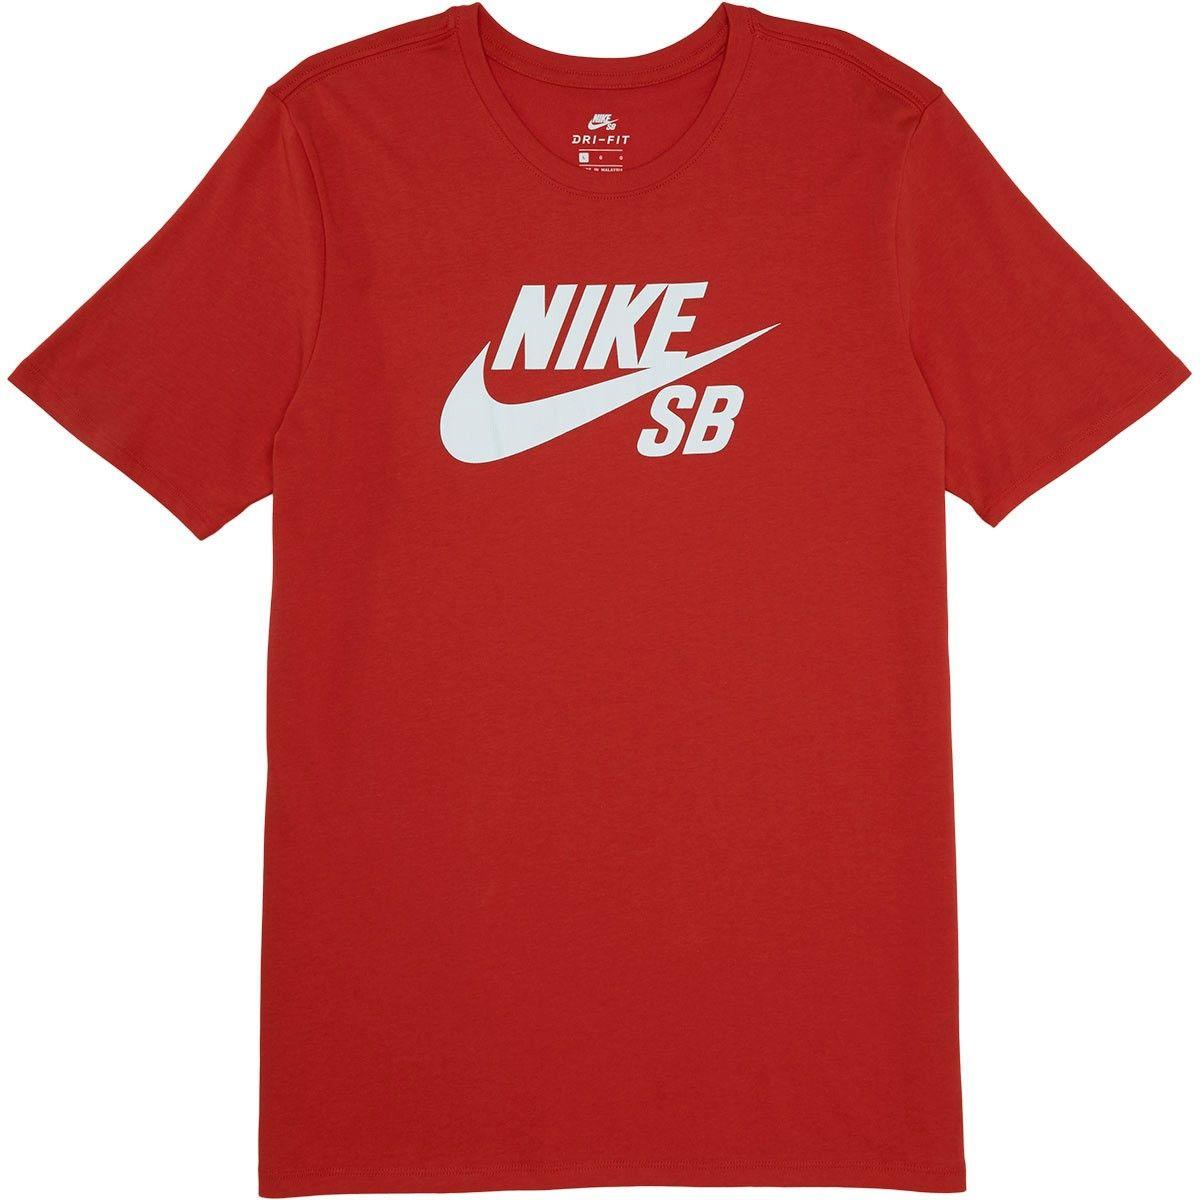 Red Nike SB Logo - Nike SB Logo T Shirt Red White